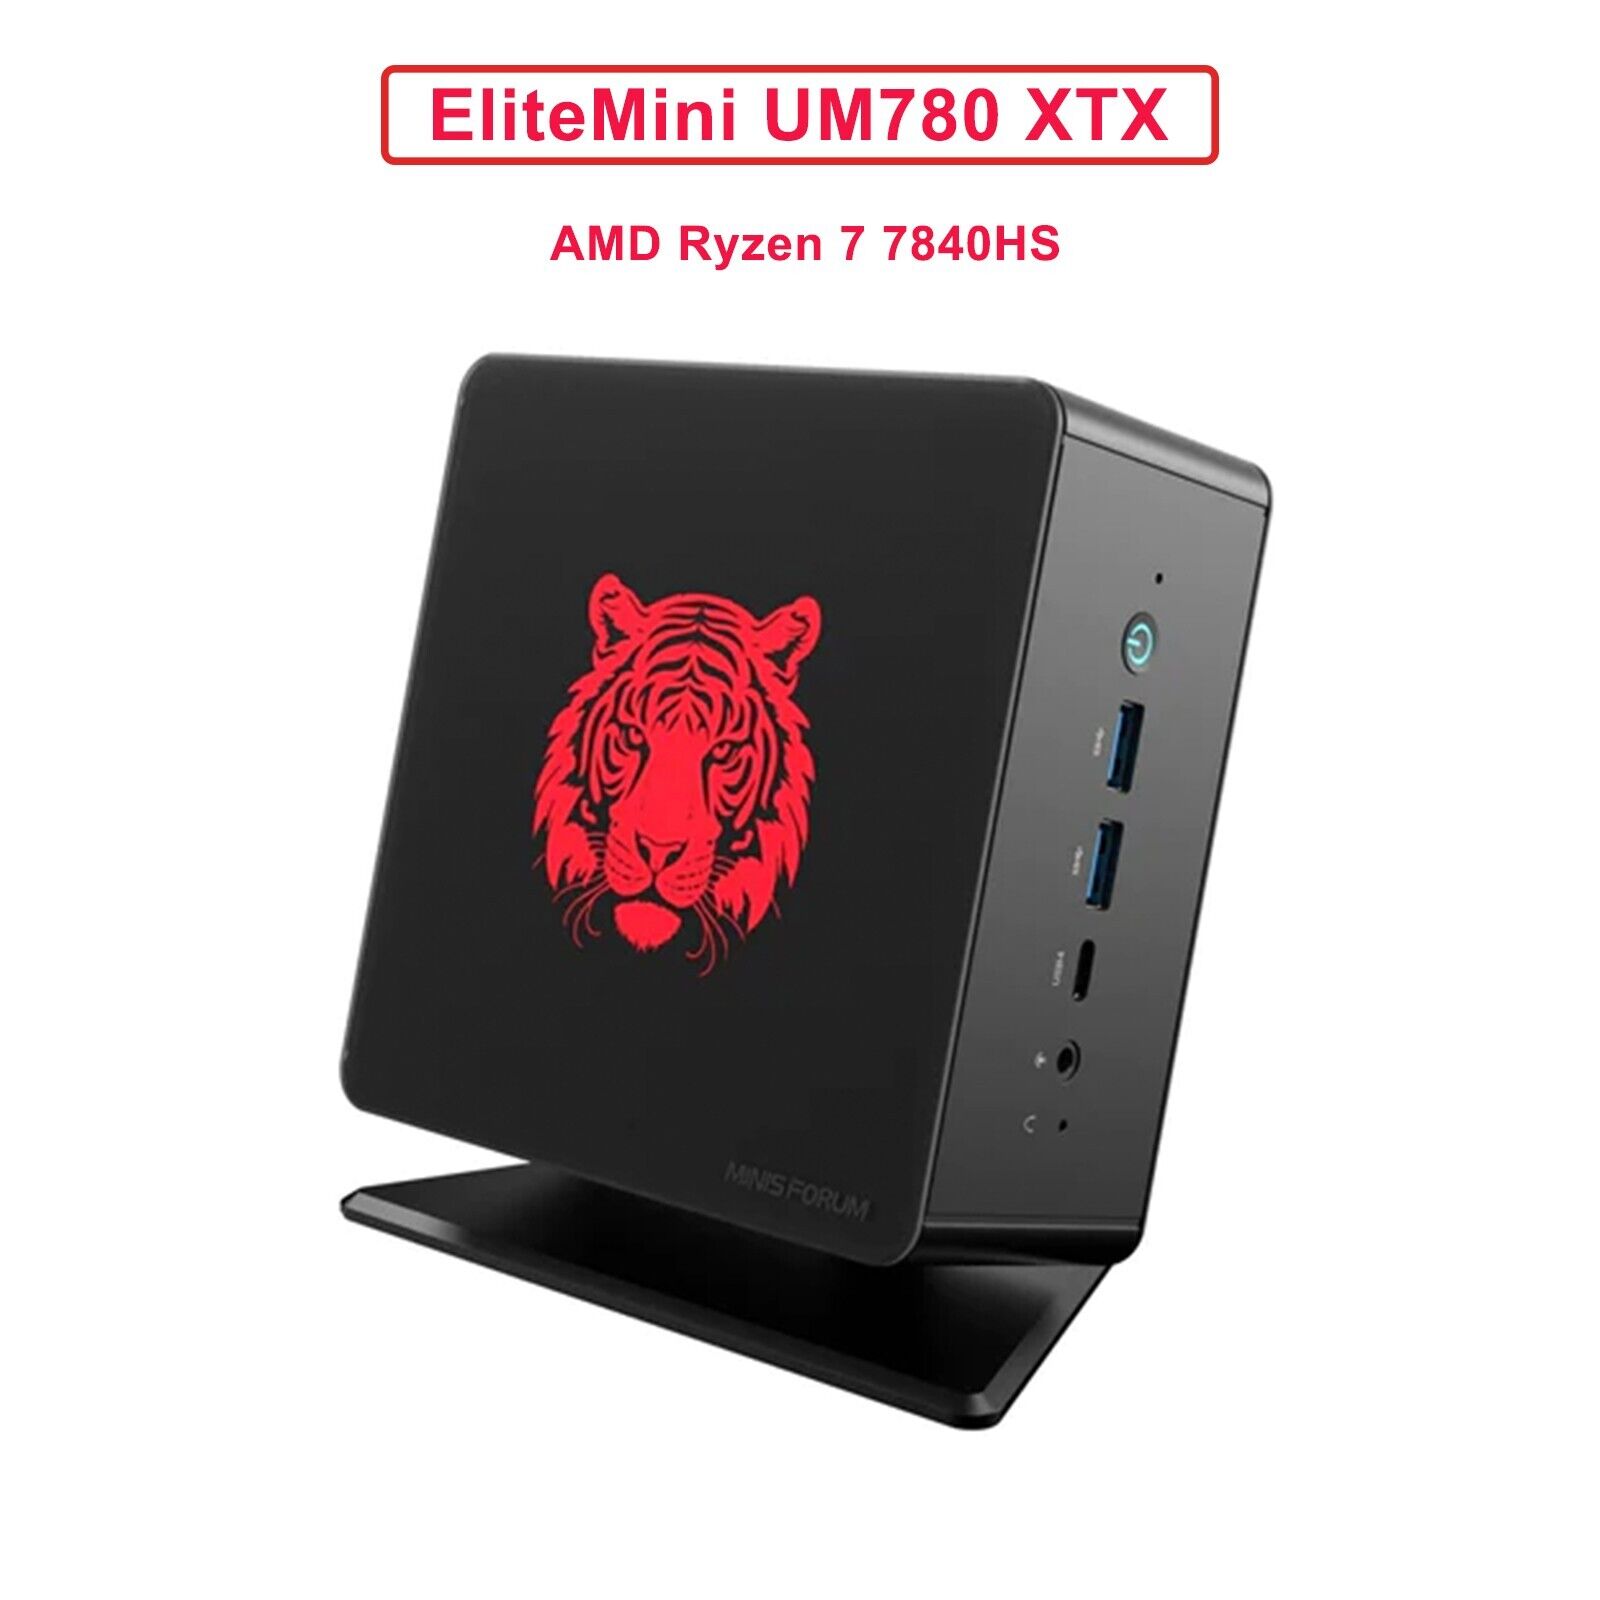 Minisforum Mini PC EliteMini UM780 XTX AMD Ryzen7 7840HS Mini PC Gaming 32GB 1TB